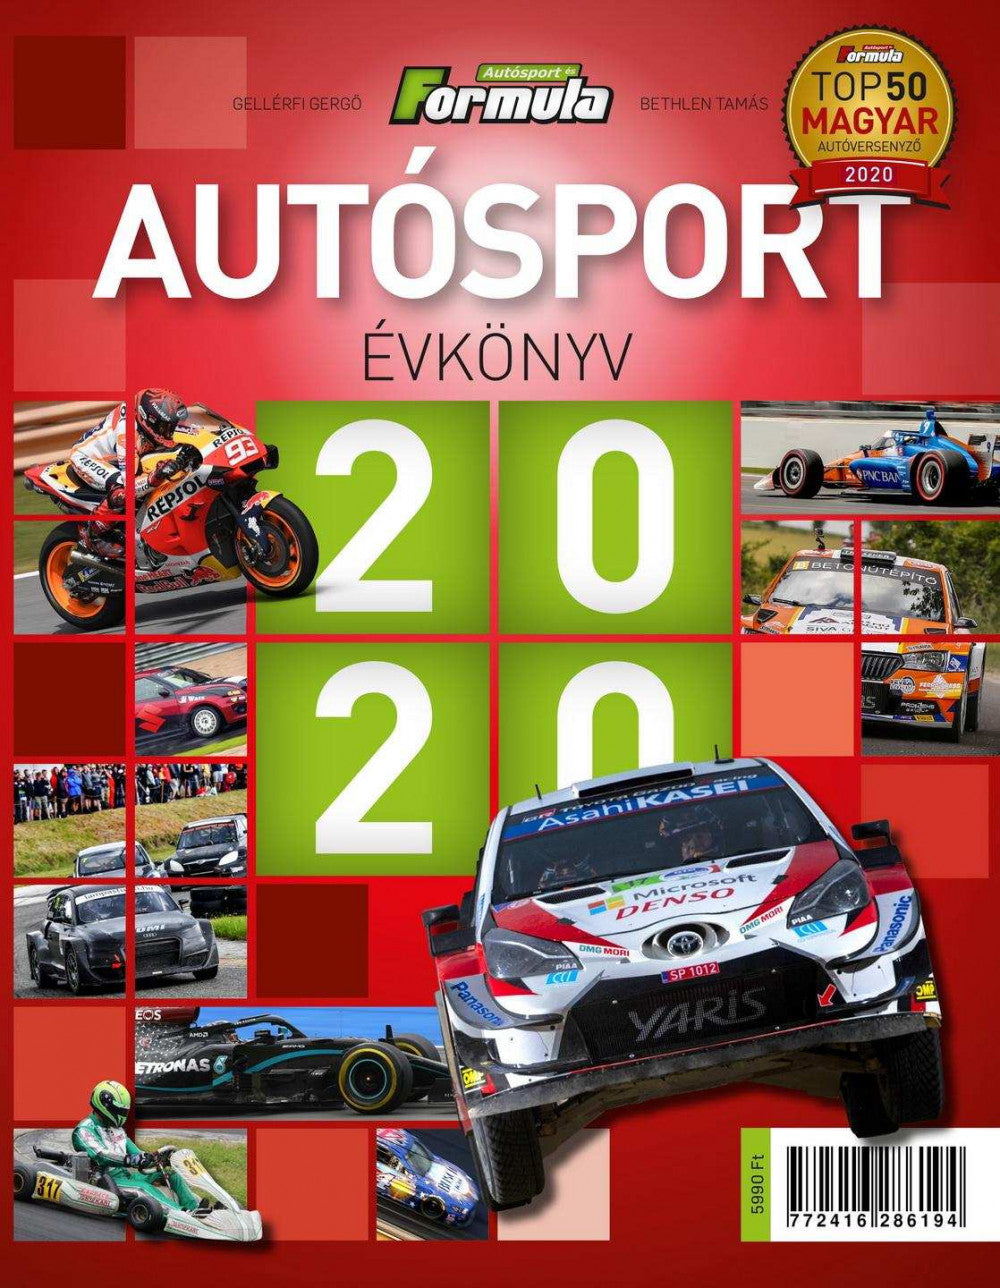 Autósport Évkönyv 2020 - Könyv